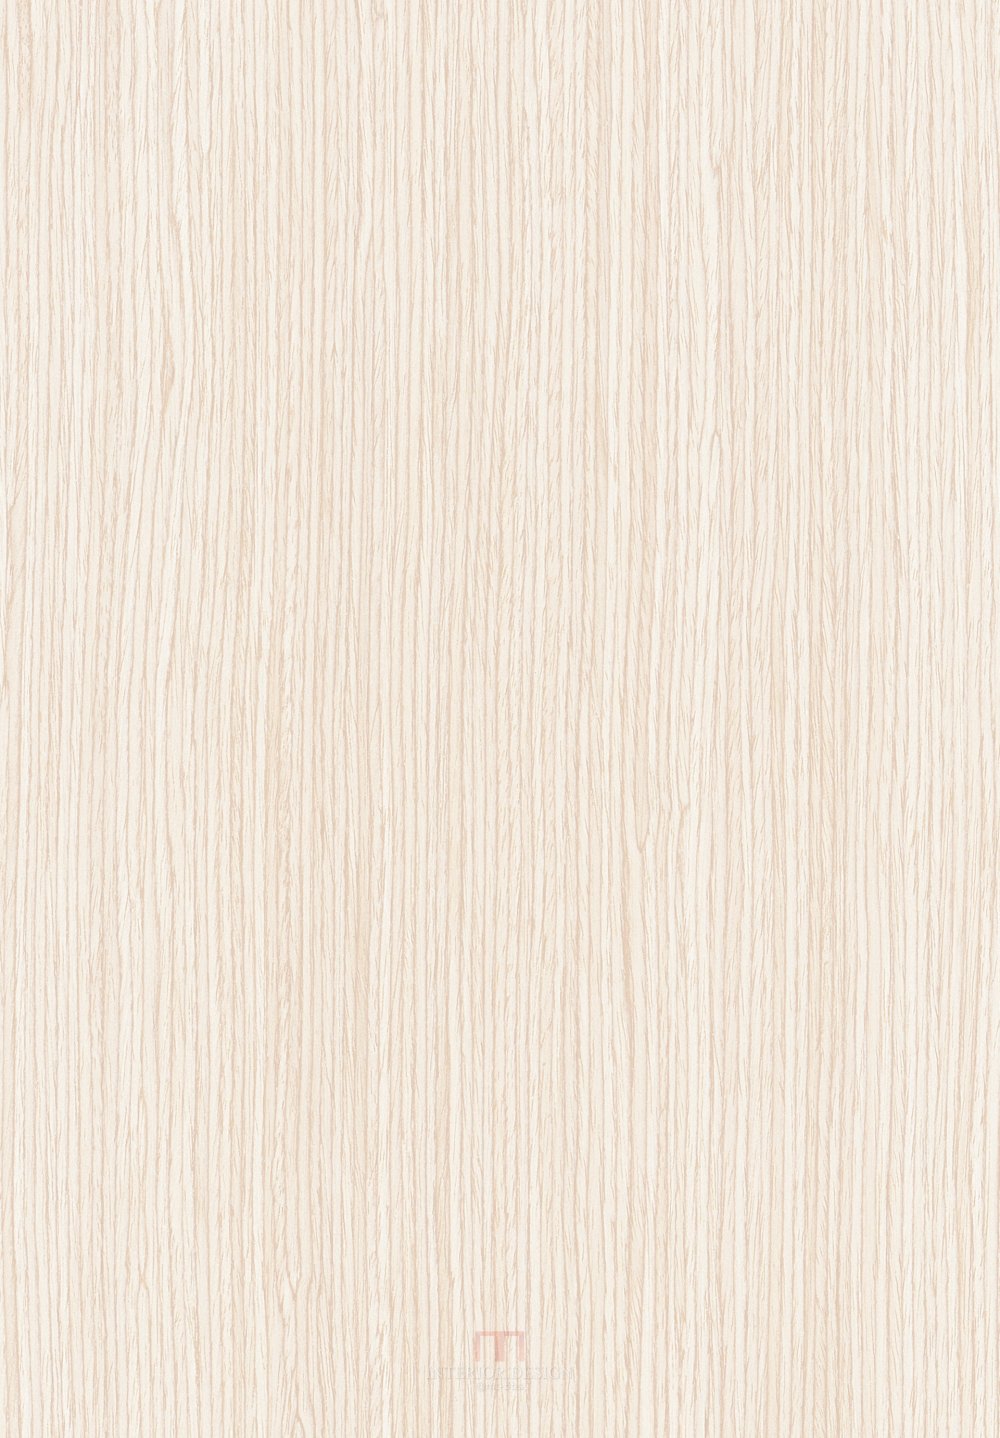 科定木饰面免漆板_072_K6302白橡木.jpg